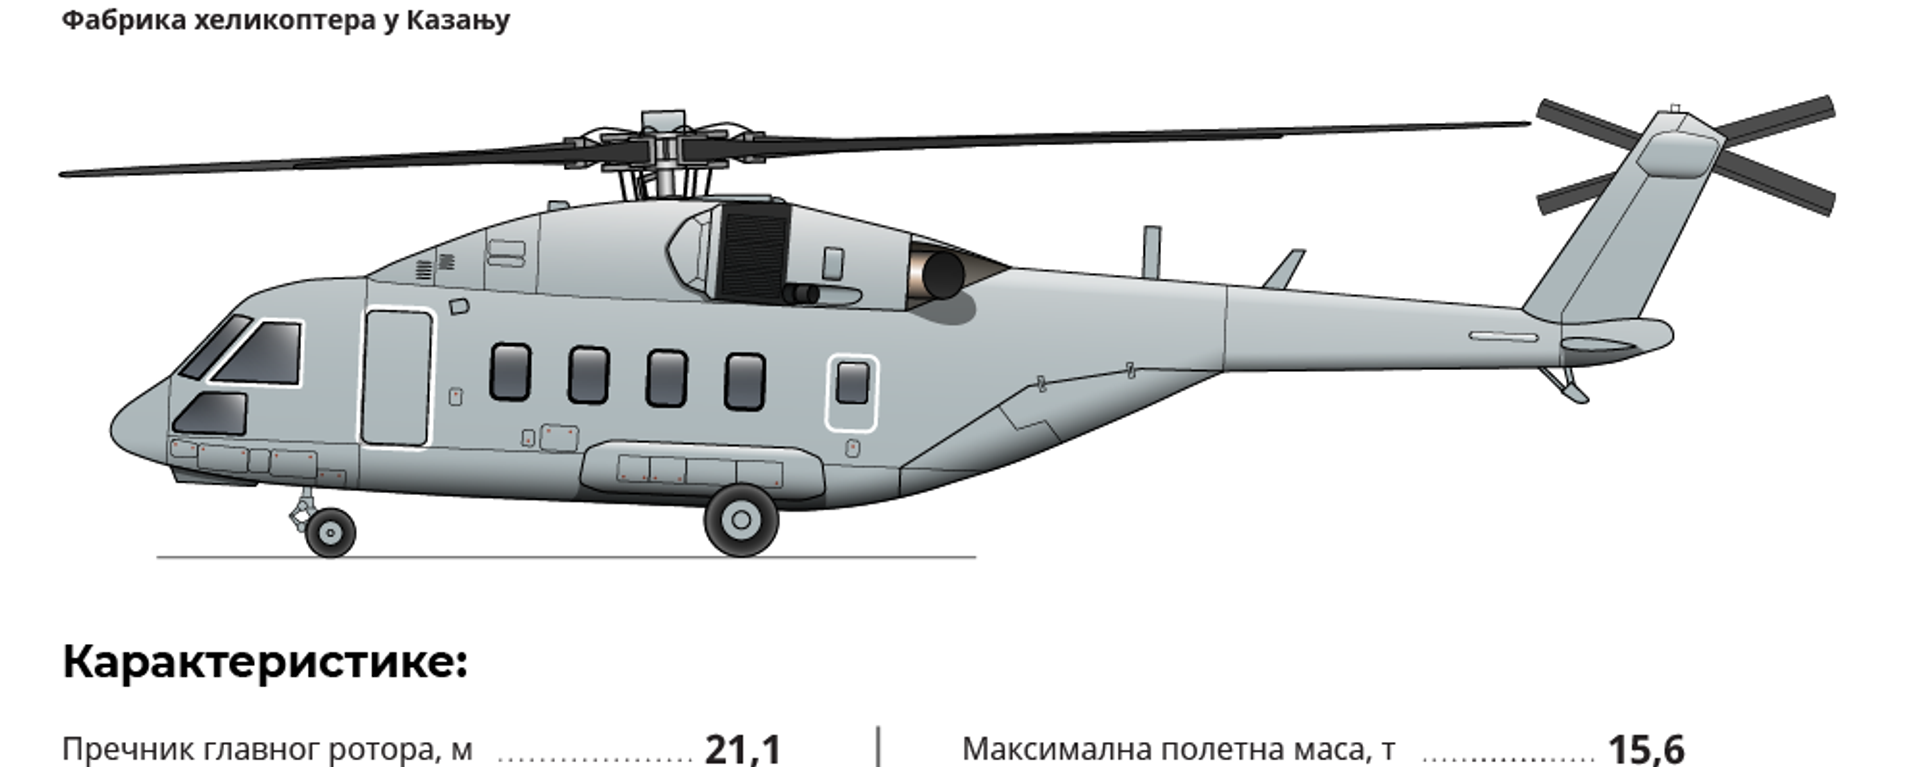 Helikopter Mi-38T - Sputnik Srbija, 1920, 09.12.2019